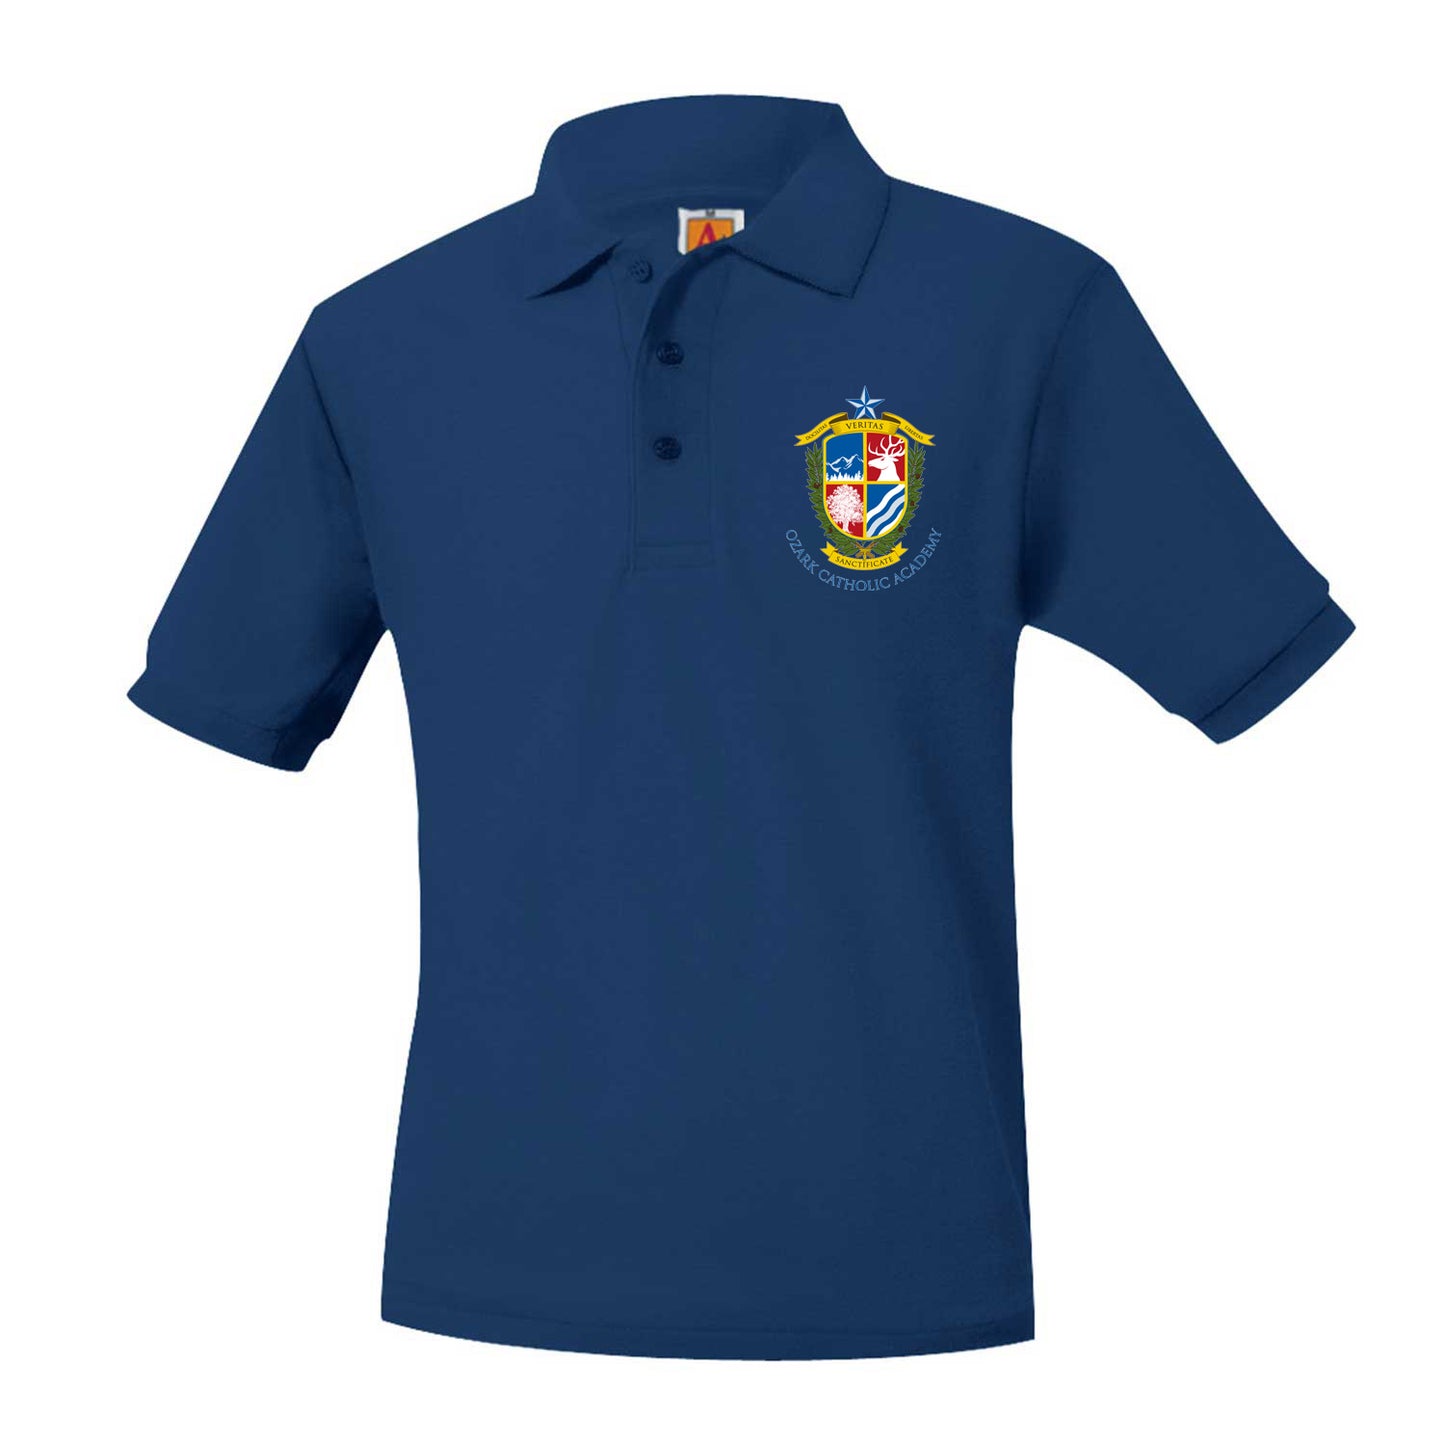 Youth Short Sleeve Pique Polo with Ozark Catholic Academy Logo